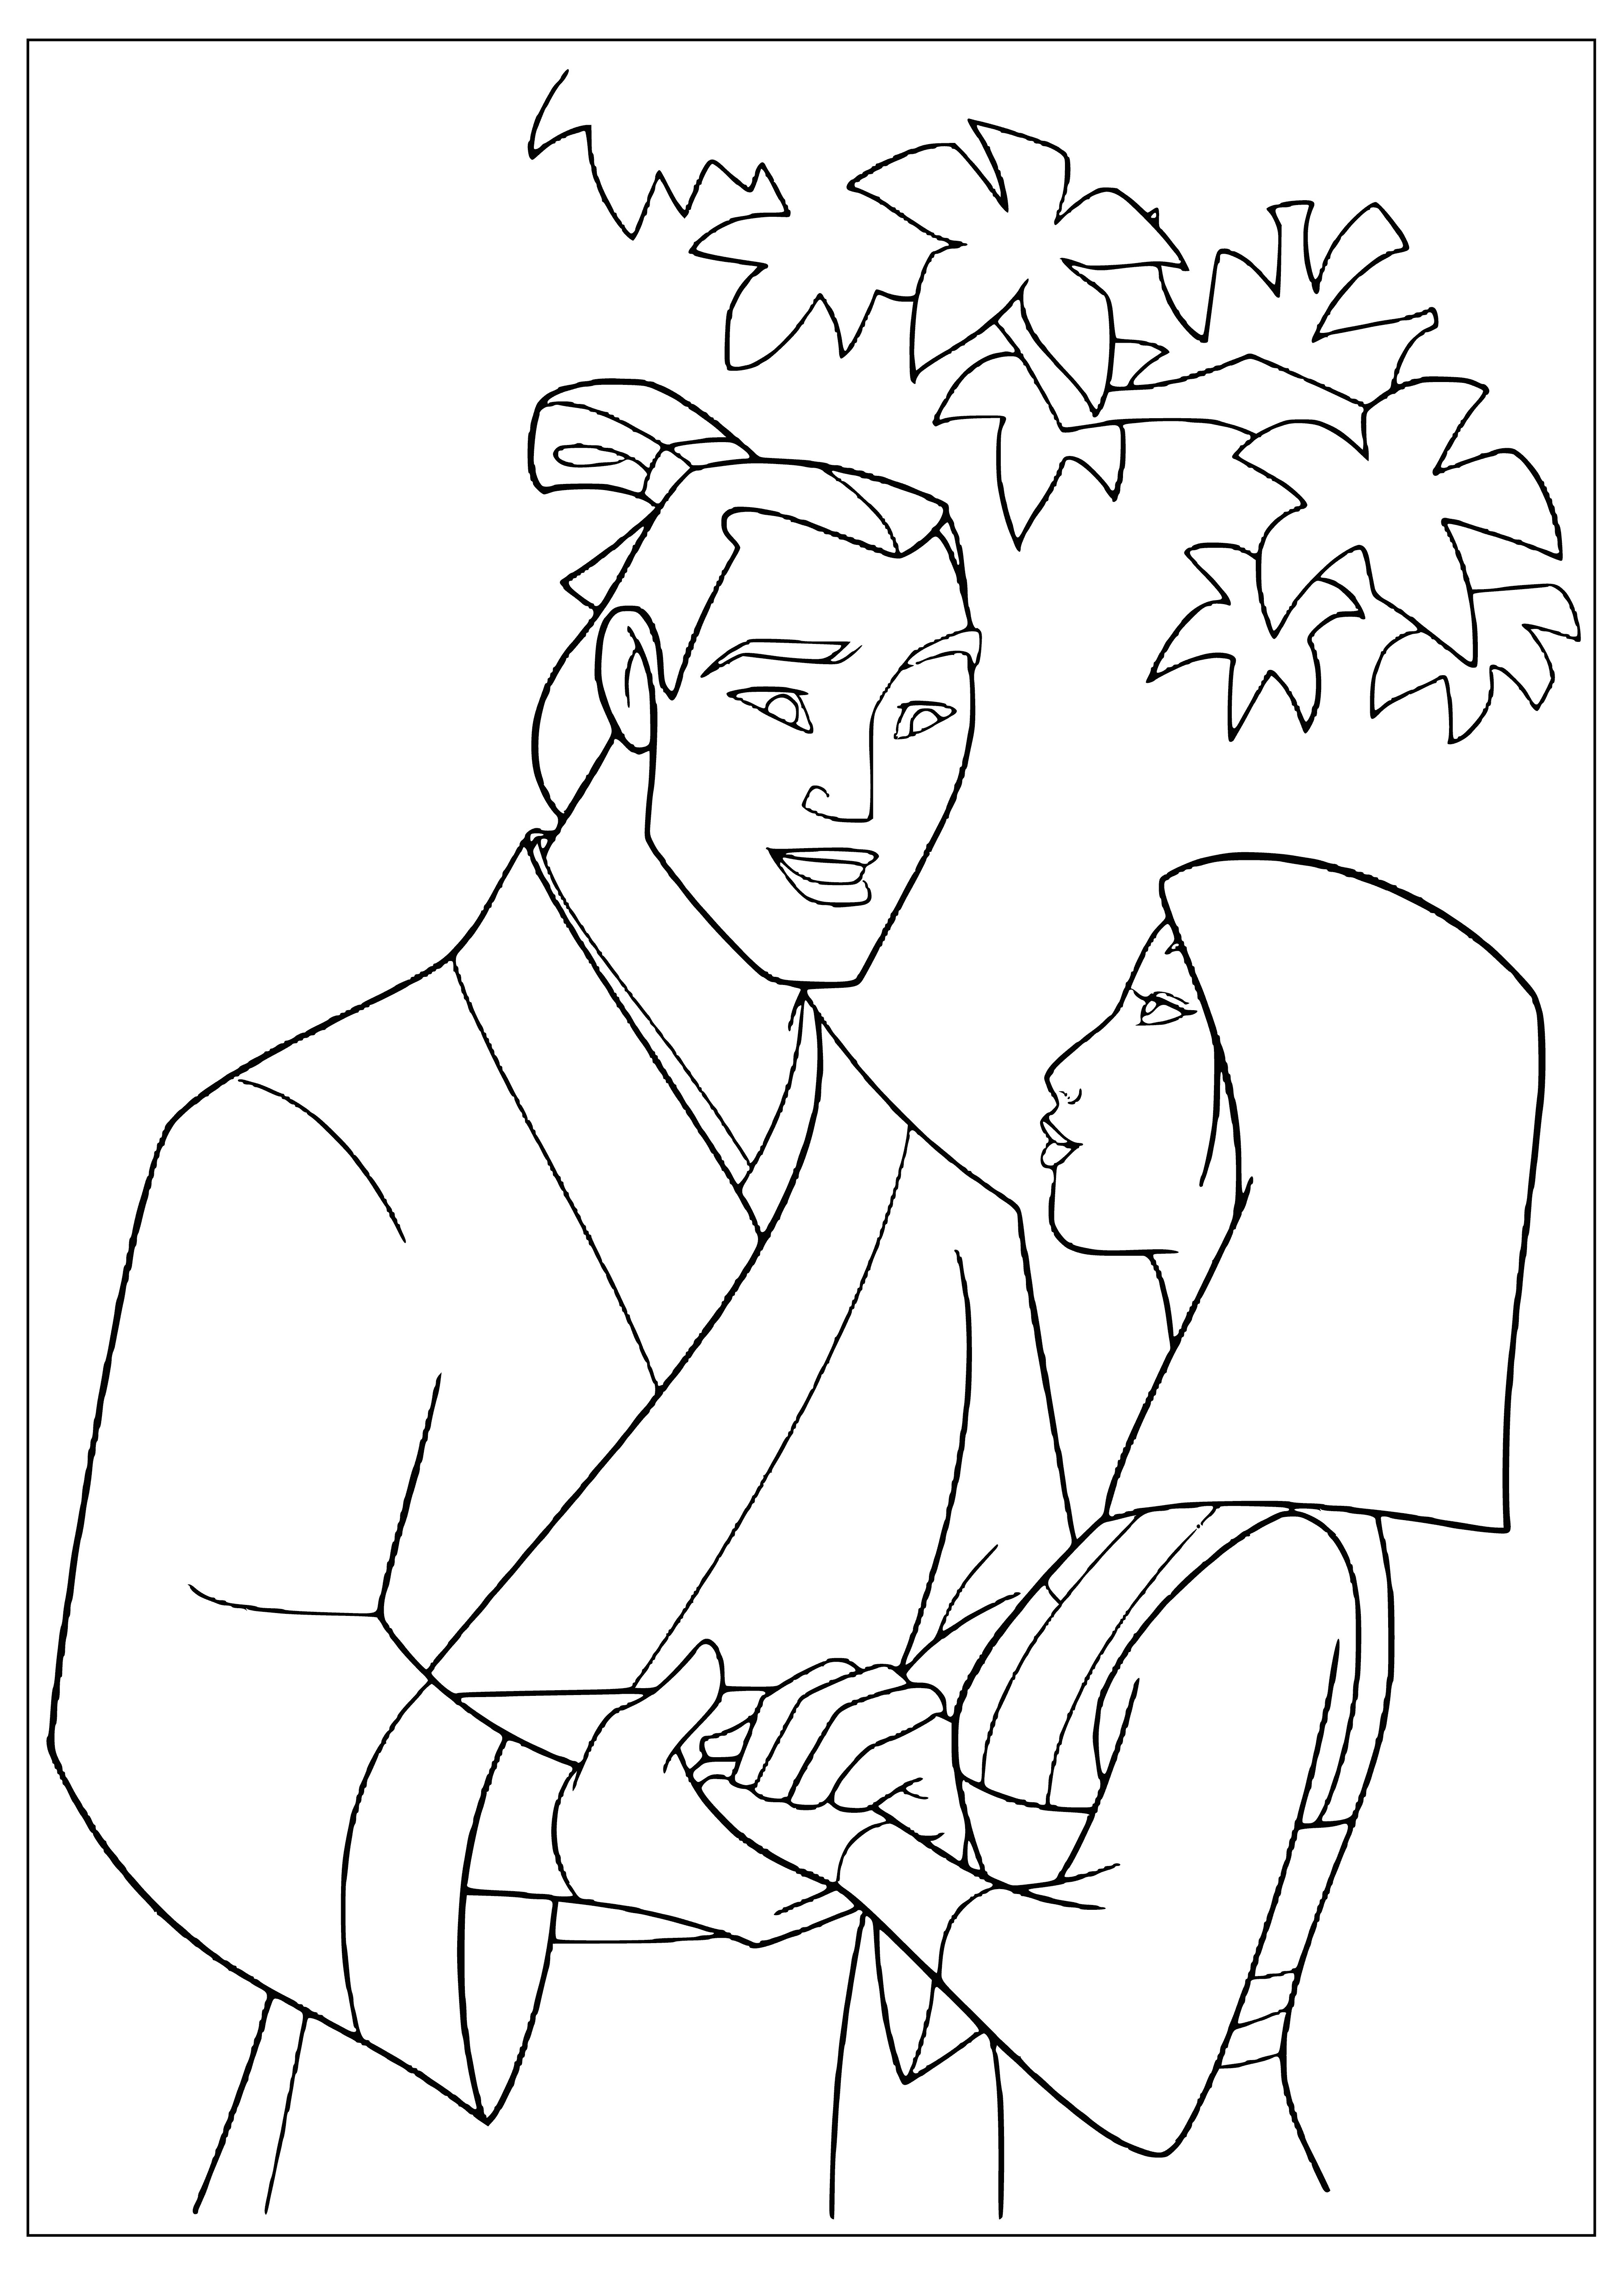 Li Shang and Mulan coloring page